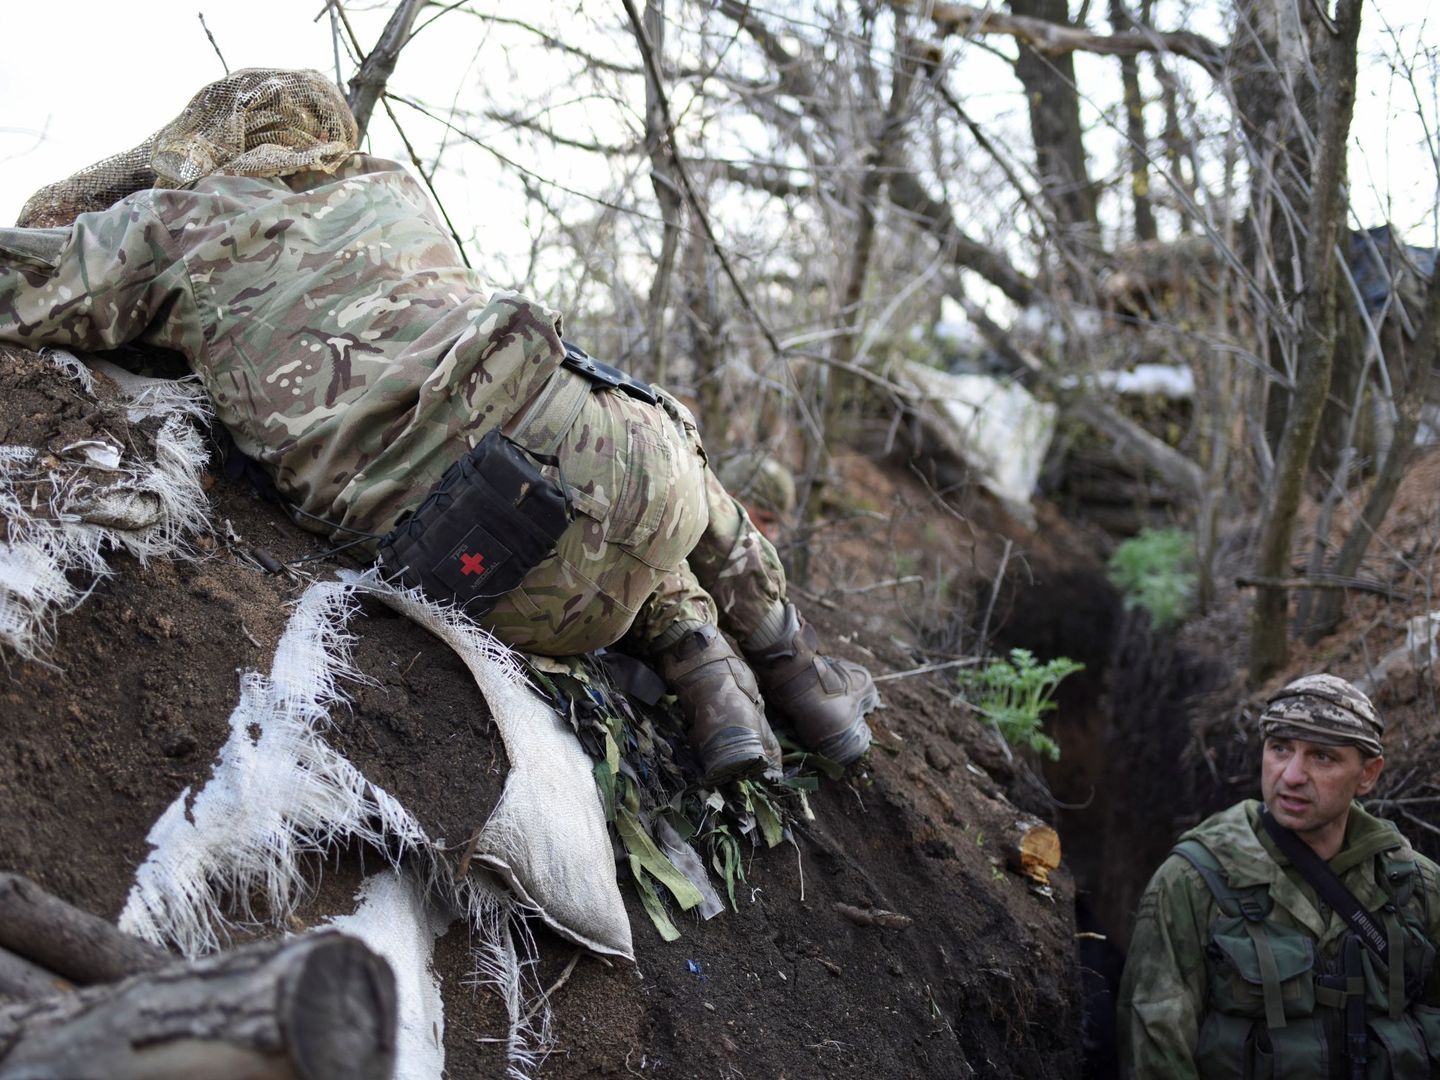 Un soldado ucraniano observa desde unos prismáticos mientras otro monta guardia a sus espaldas, en Lugansk, Ucrania. (EFE)